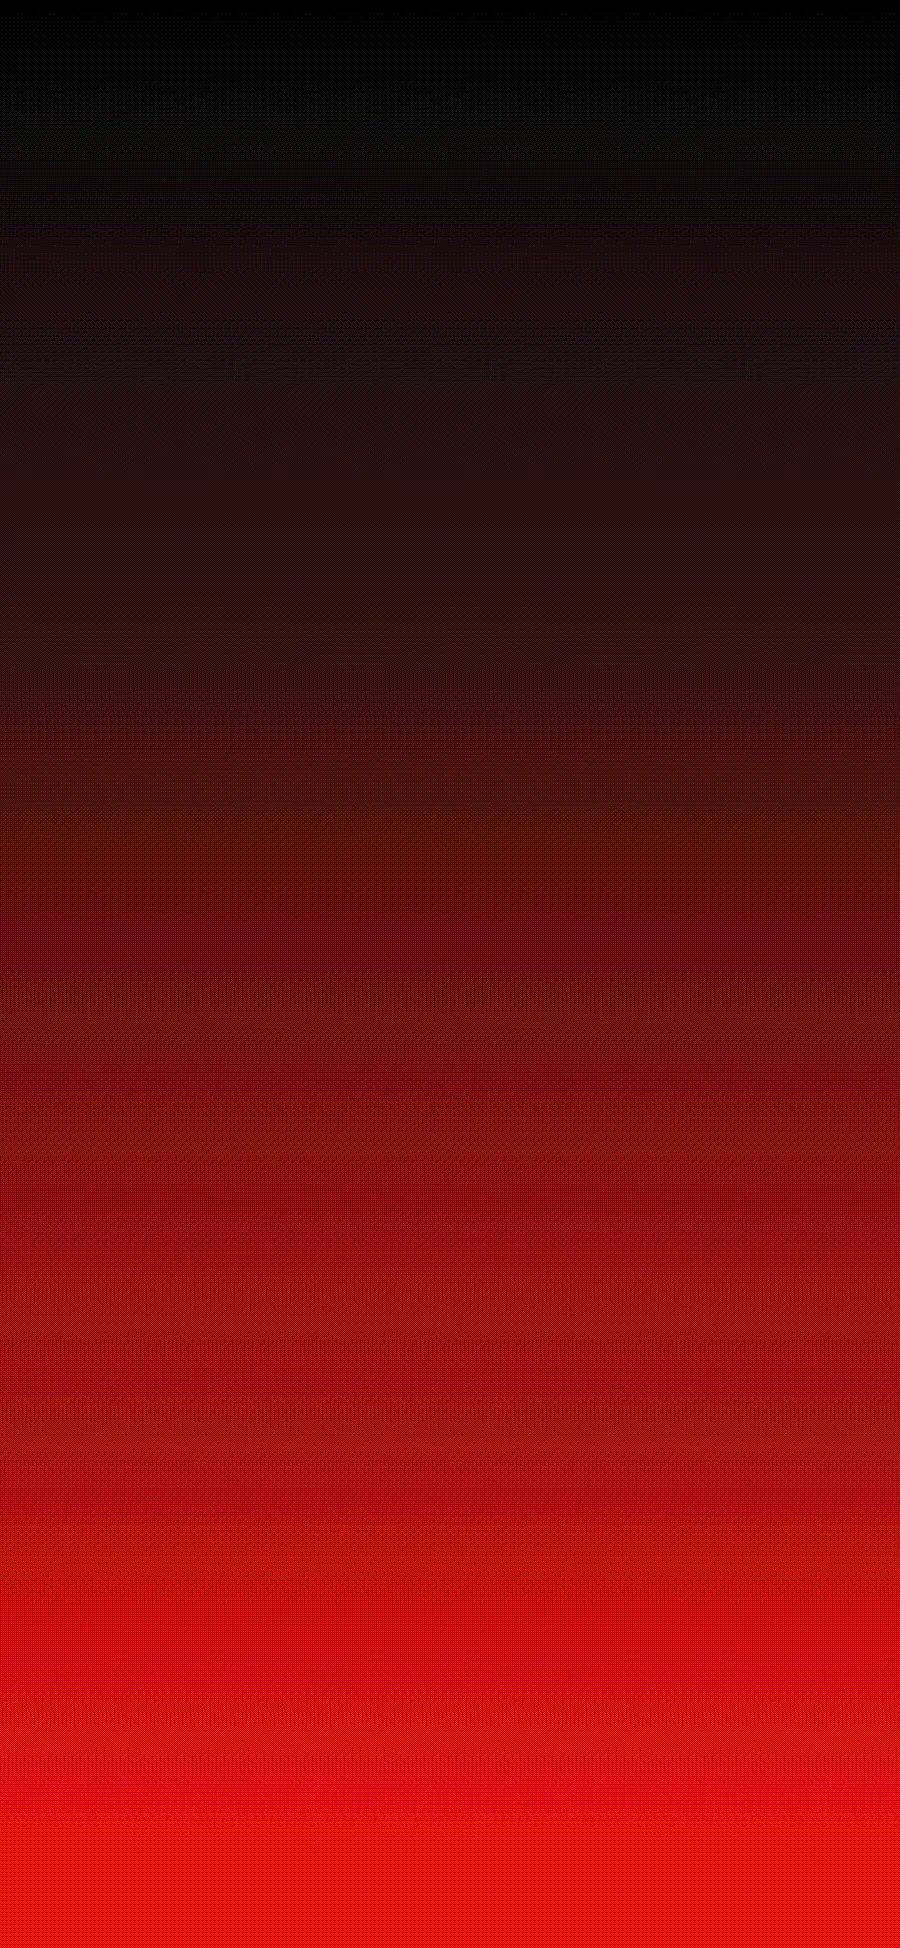 گرادیان قرمز با شیب ملایم به رنگ مشکی برای تصویر زمینه آیفون